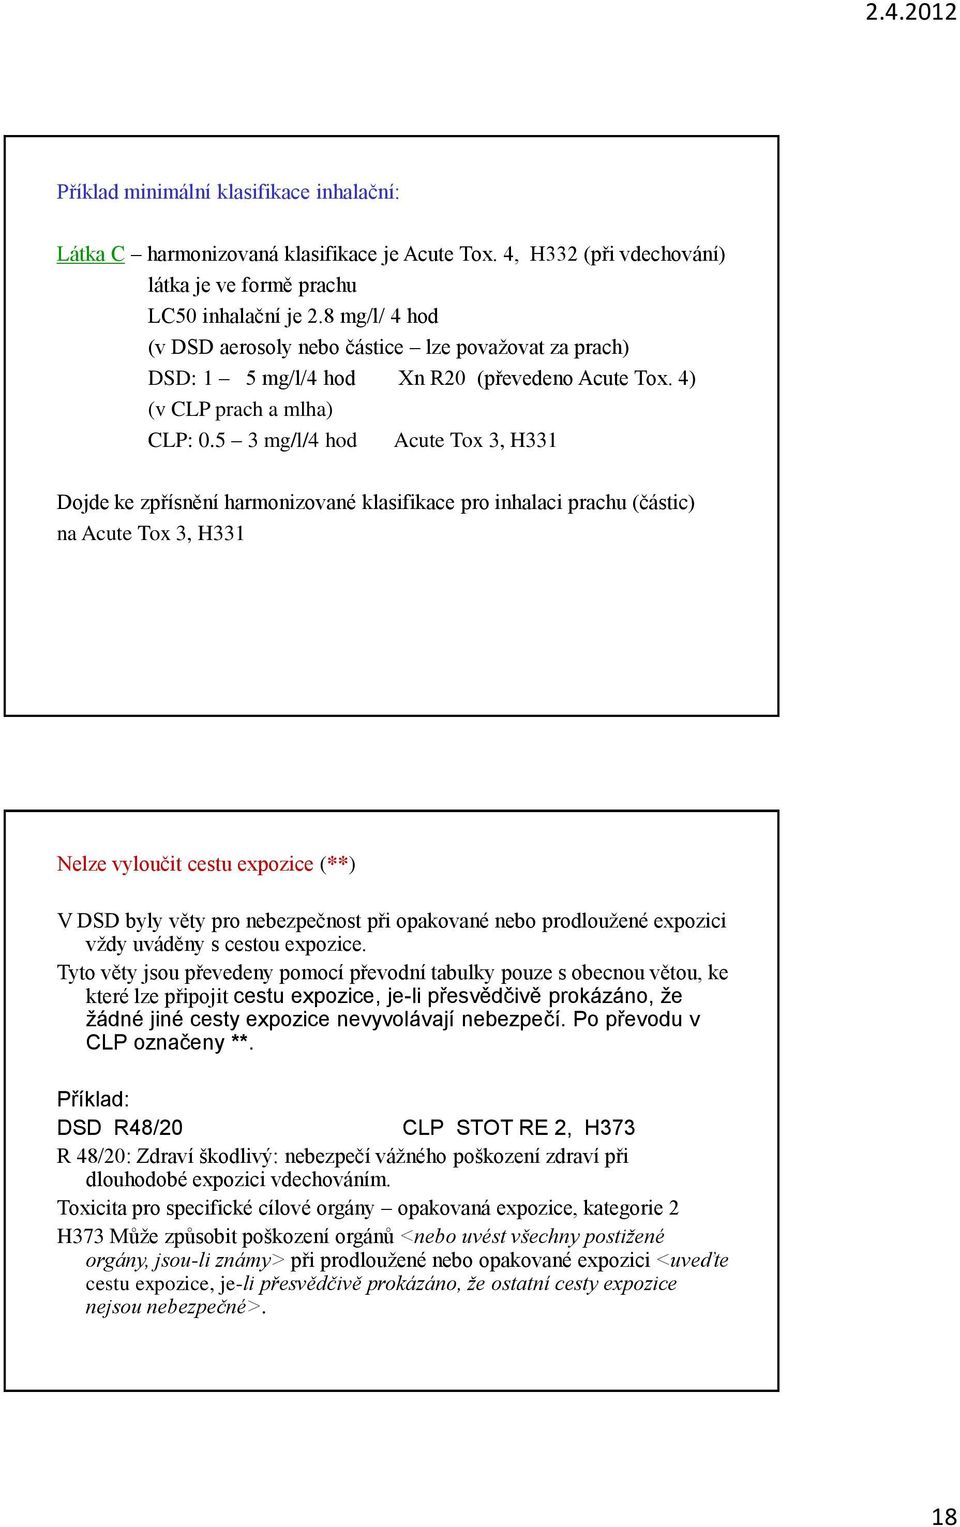 5 3 mg/l/4 hod Acute Tox 3, H331 Dojde ke zpřísnění harmonizované klasifikace pro inhalaci prachu (částic) na Acute Tox 3, H331 Nelze vyloučit cestu expozice (**) V DSD byly věty pro nebezpečnost při